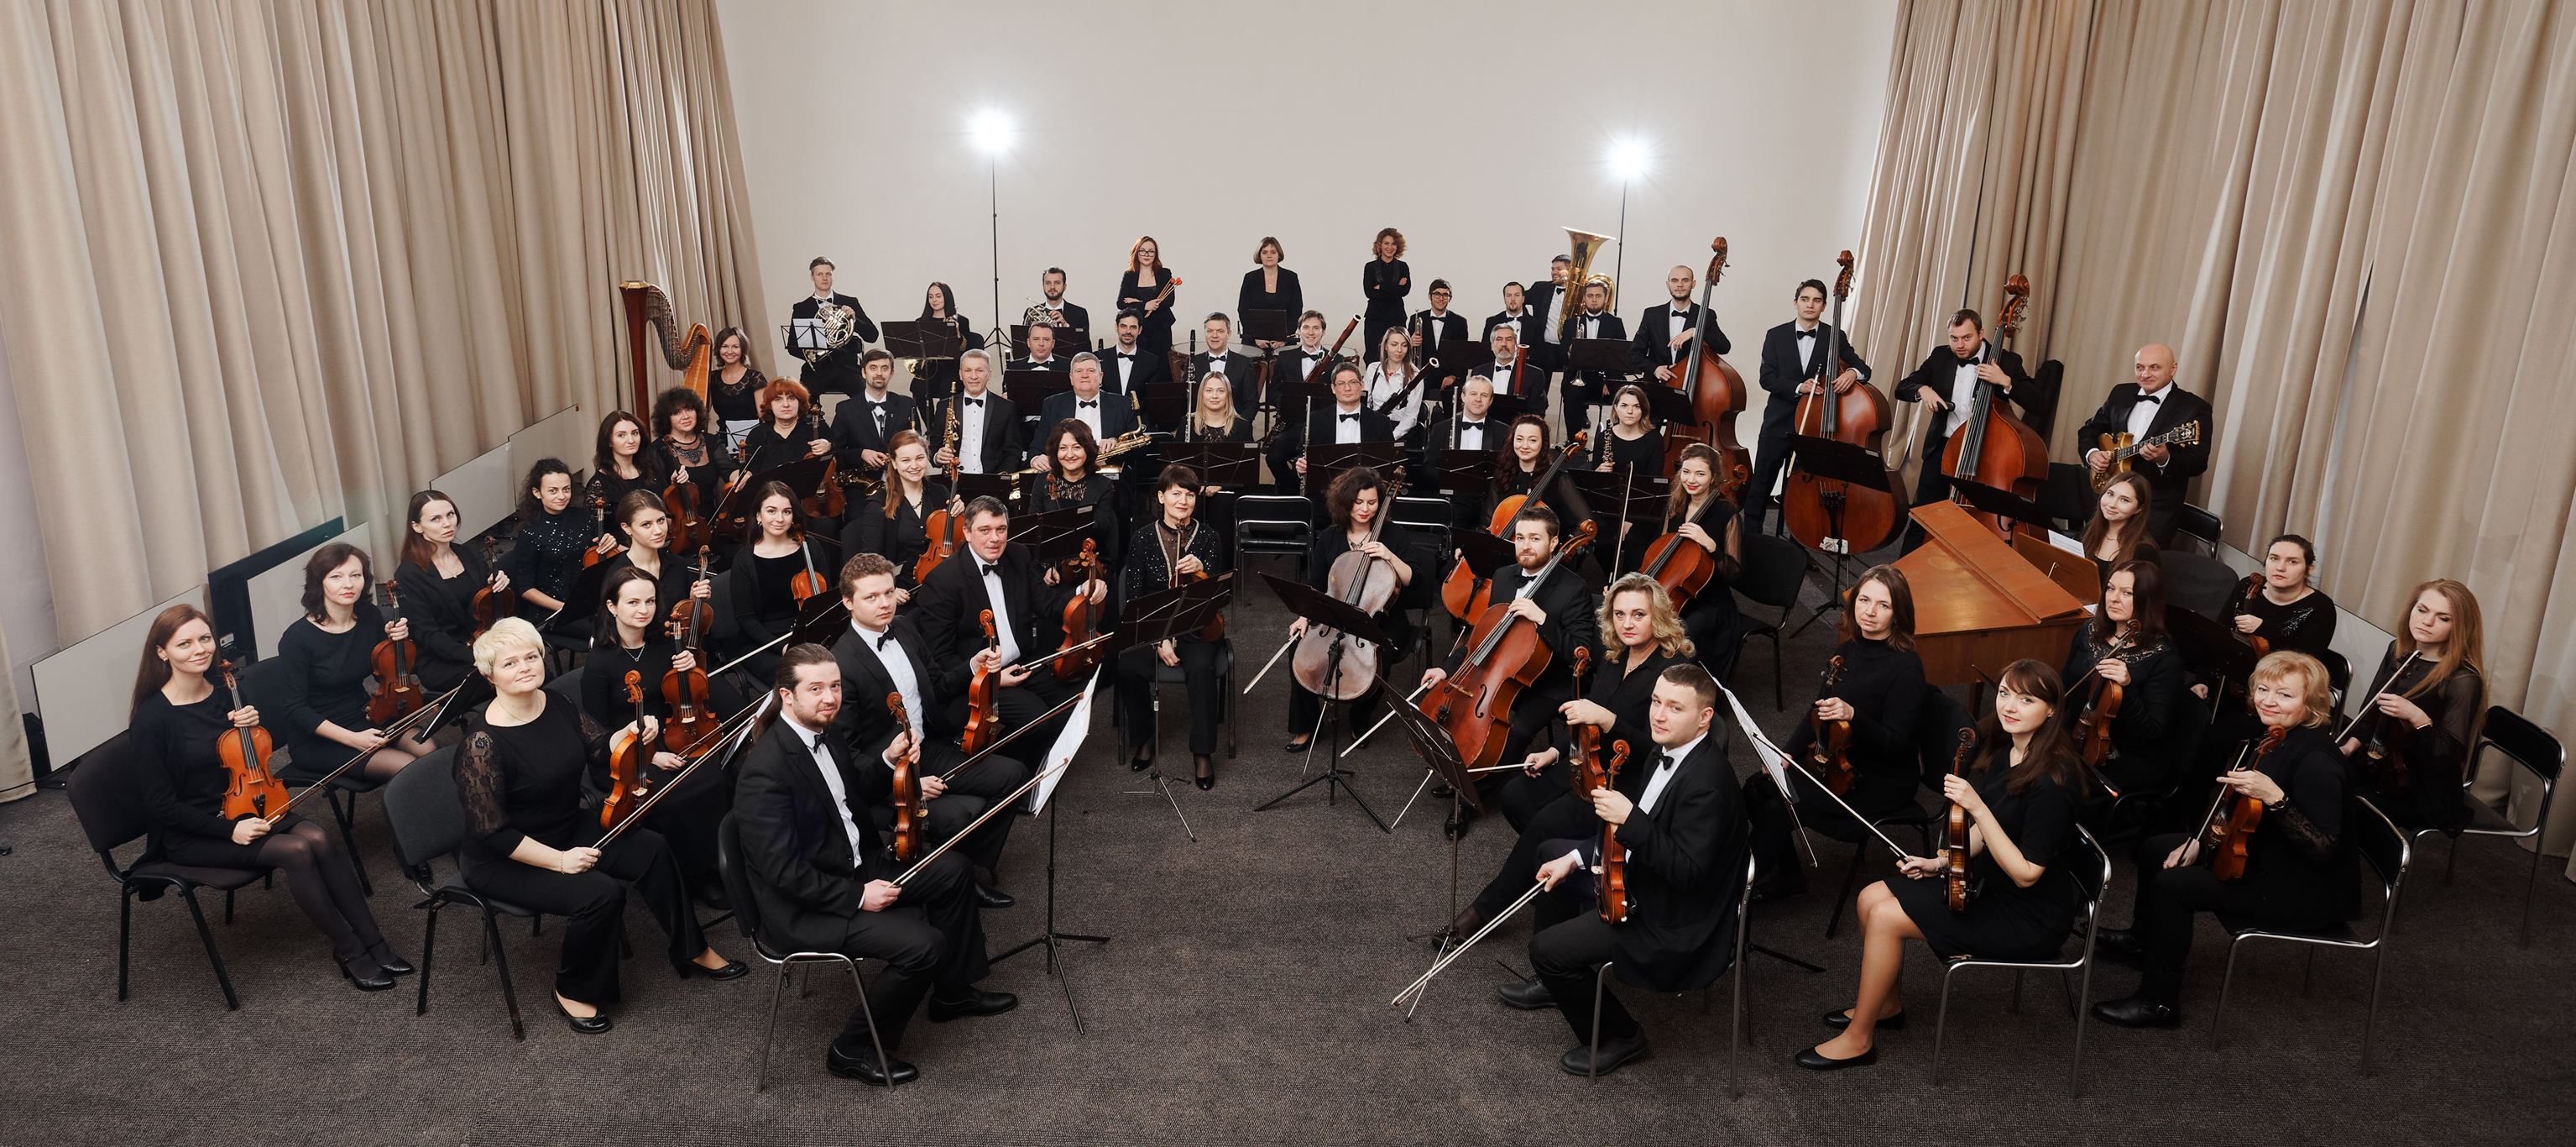 Державний академічний естрадно-симфонічний оркестр зіграє новий варіант «Гуцульського триптиха» Мирослава Скорика